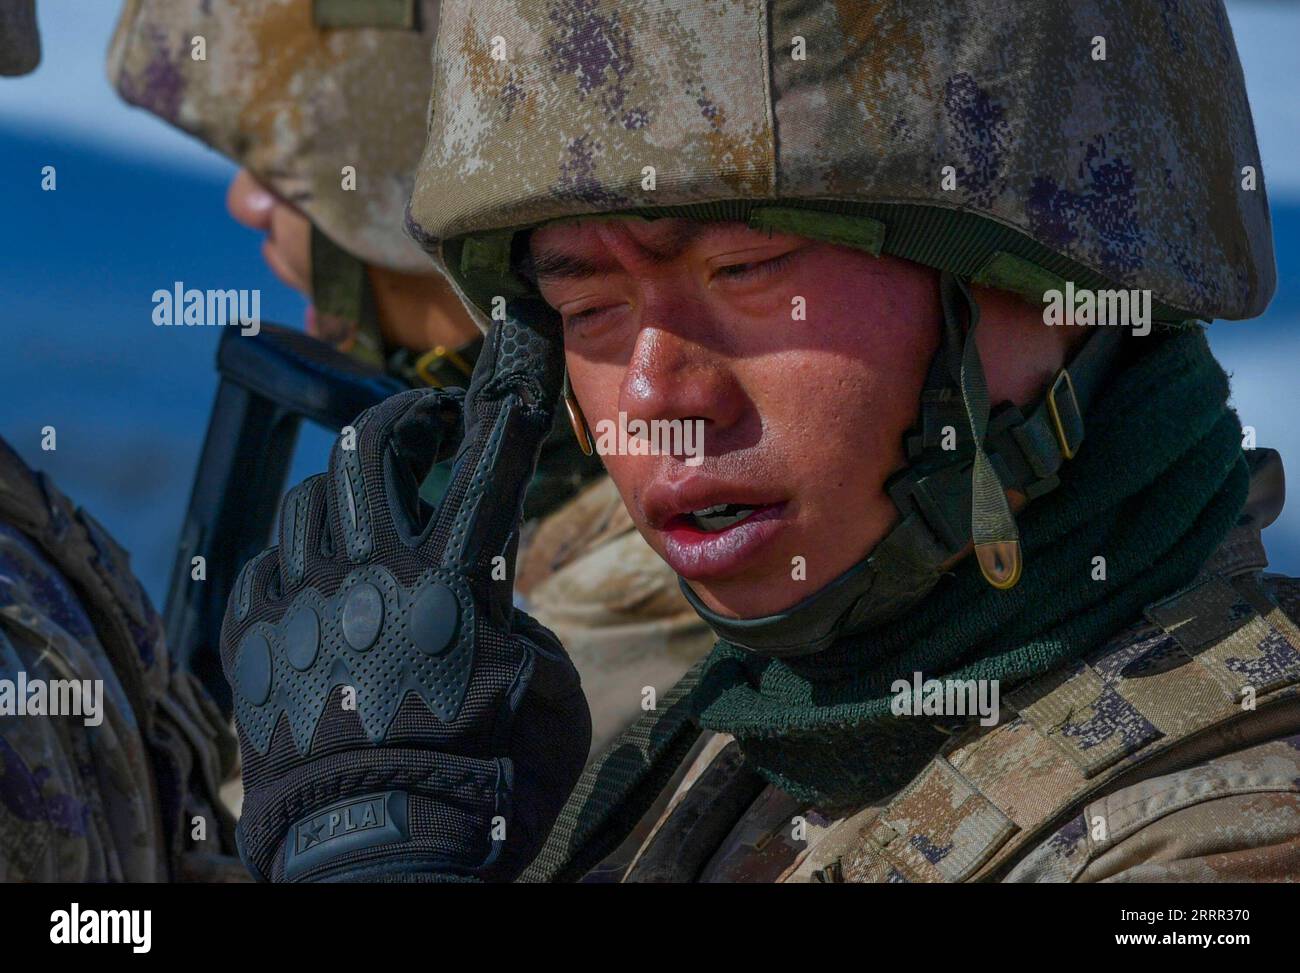 230429 -- KHUNJERAB, 29 aprile 2023 -- Un soldato pulisce il sudore durante una pattuglia a Khunjerab, nella regione autonoma dello Xinjiang Uygur della Cina nord-occidentale, 13 aprile 2023. Gao Guanghui, una recluta che si era appena arruolata nell'esercito per 7 mesi, rimase scioccato quando entrò nella sala d'onore del reggimento di difesa di confine a Khunjerab, nella regione autonoma di Uygur dello Xinjiang in Cina settentrionale. Il reggimento è basato sui Pamir, a guardia del confine Cina-Pakistan e del porto di Khunjerab. Con un'altitudine media di 4.700 metri, il luogo è una zona proibita per molte persone, in quanto la temperatura qui può scendere fino a minu Foto Stock